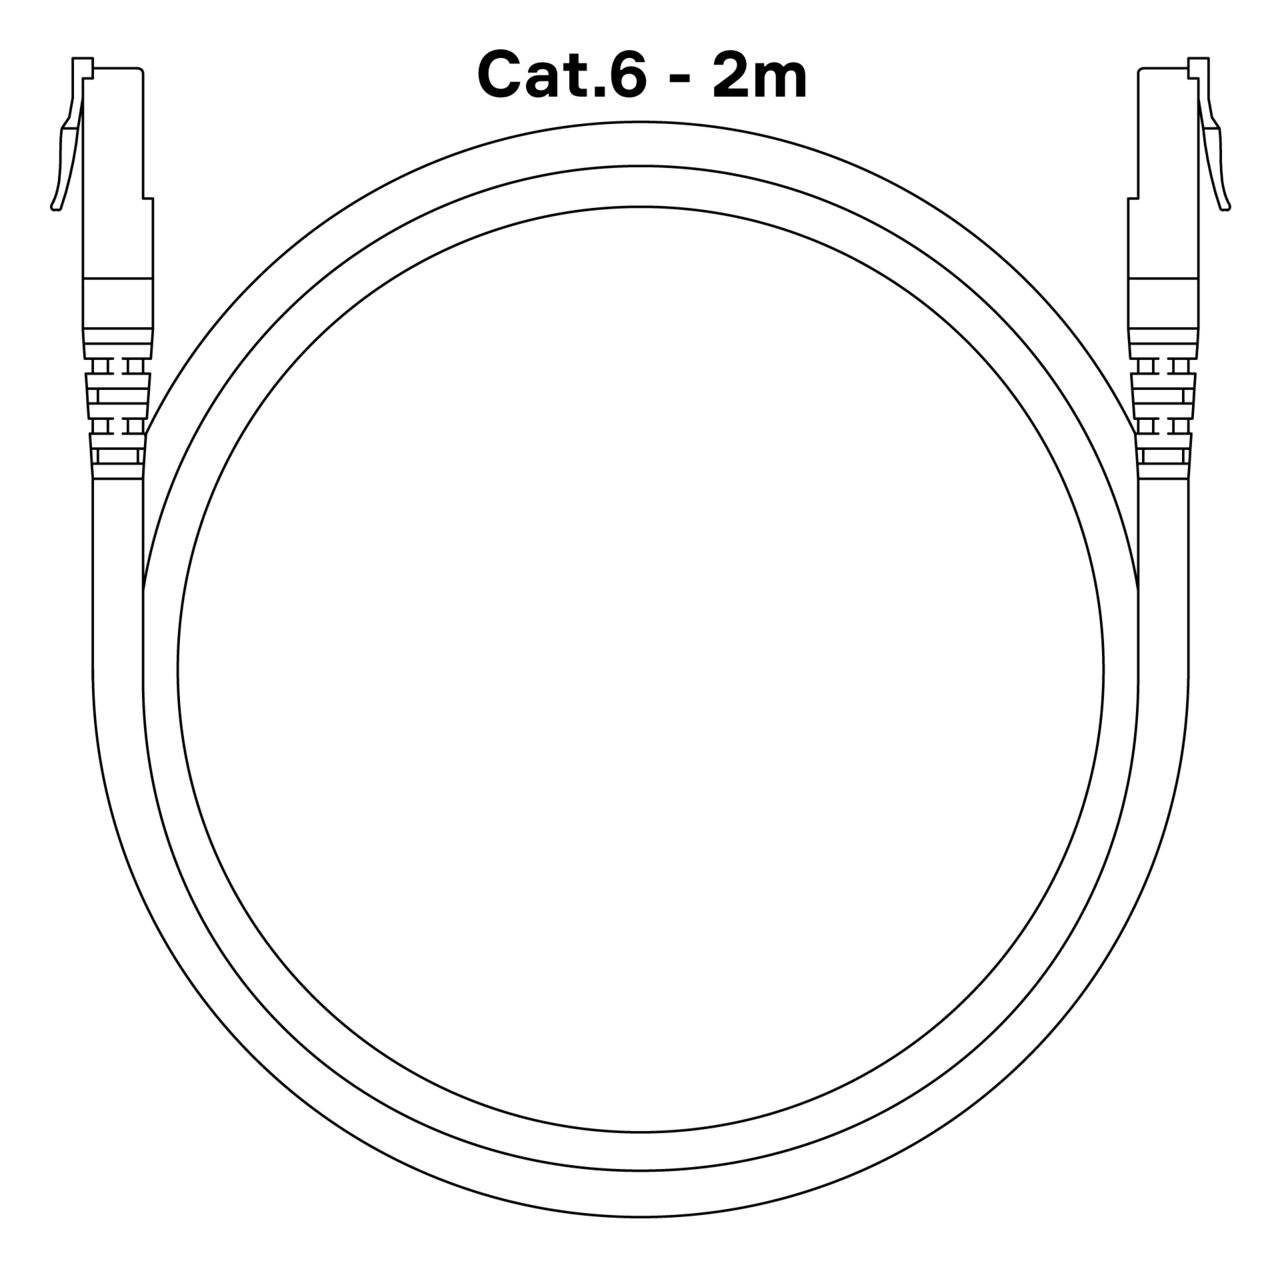 Waterguard Cat.6 Cable - 2xRJ45 - 2 m 2000mm 2m ventilkabel 1